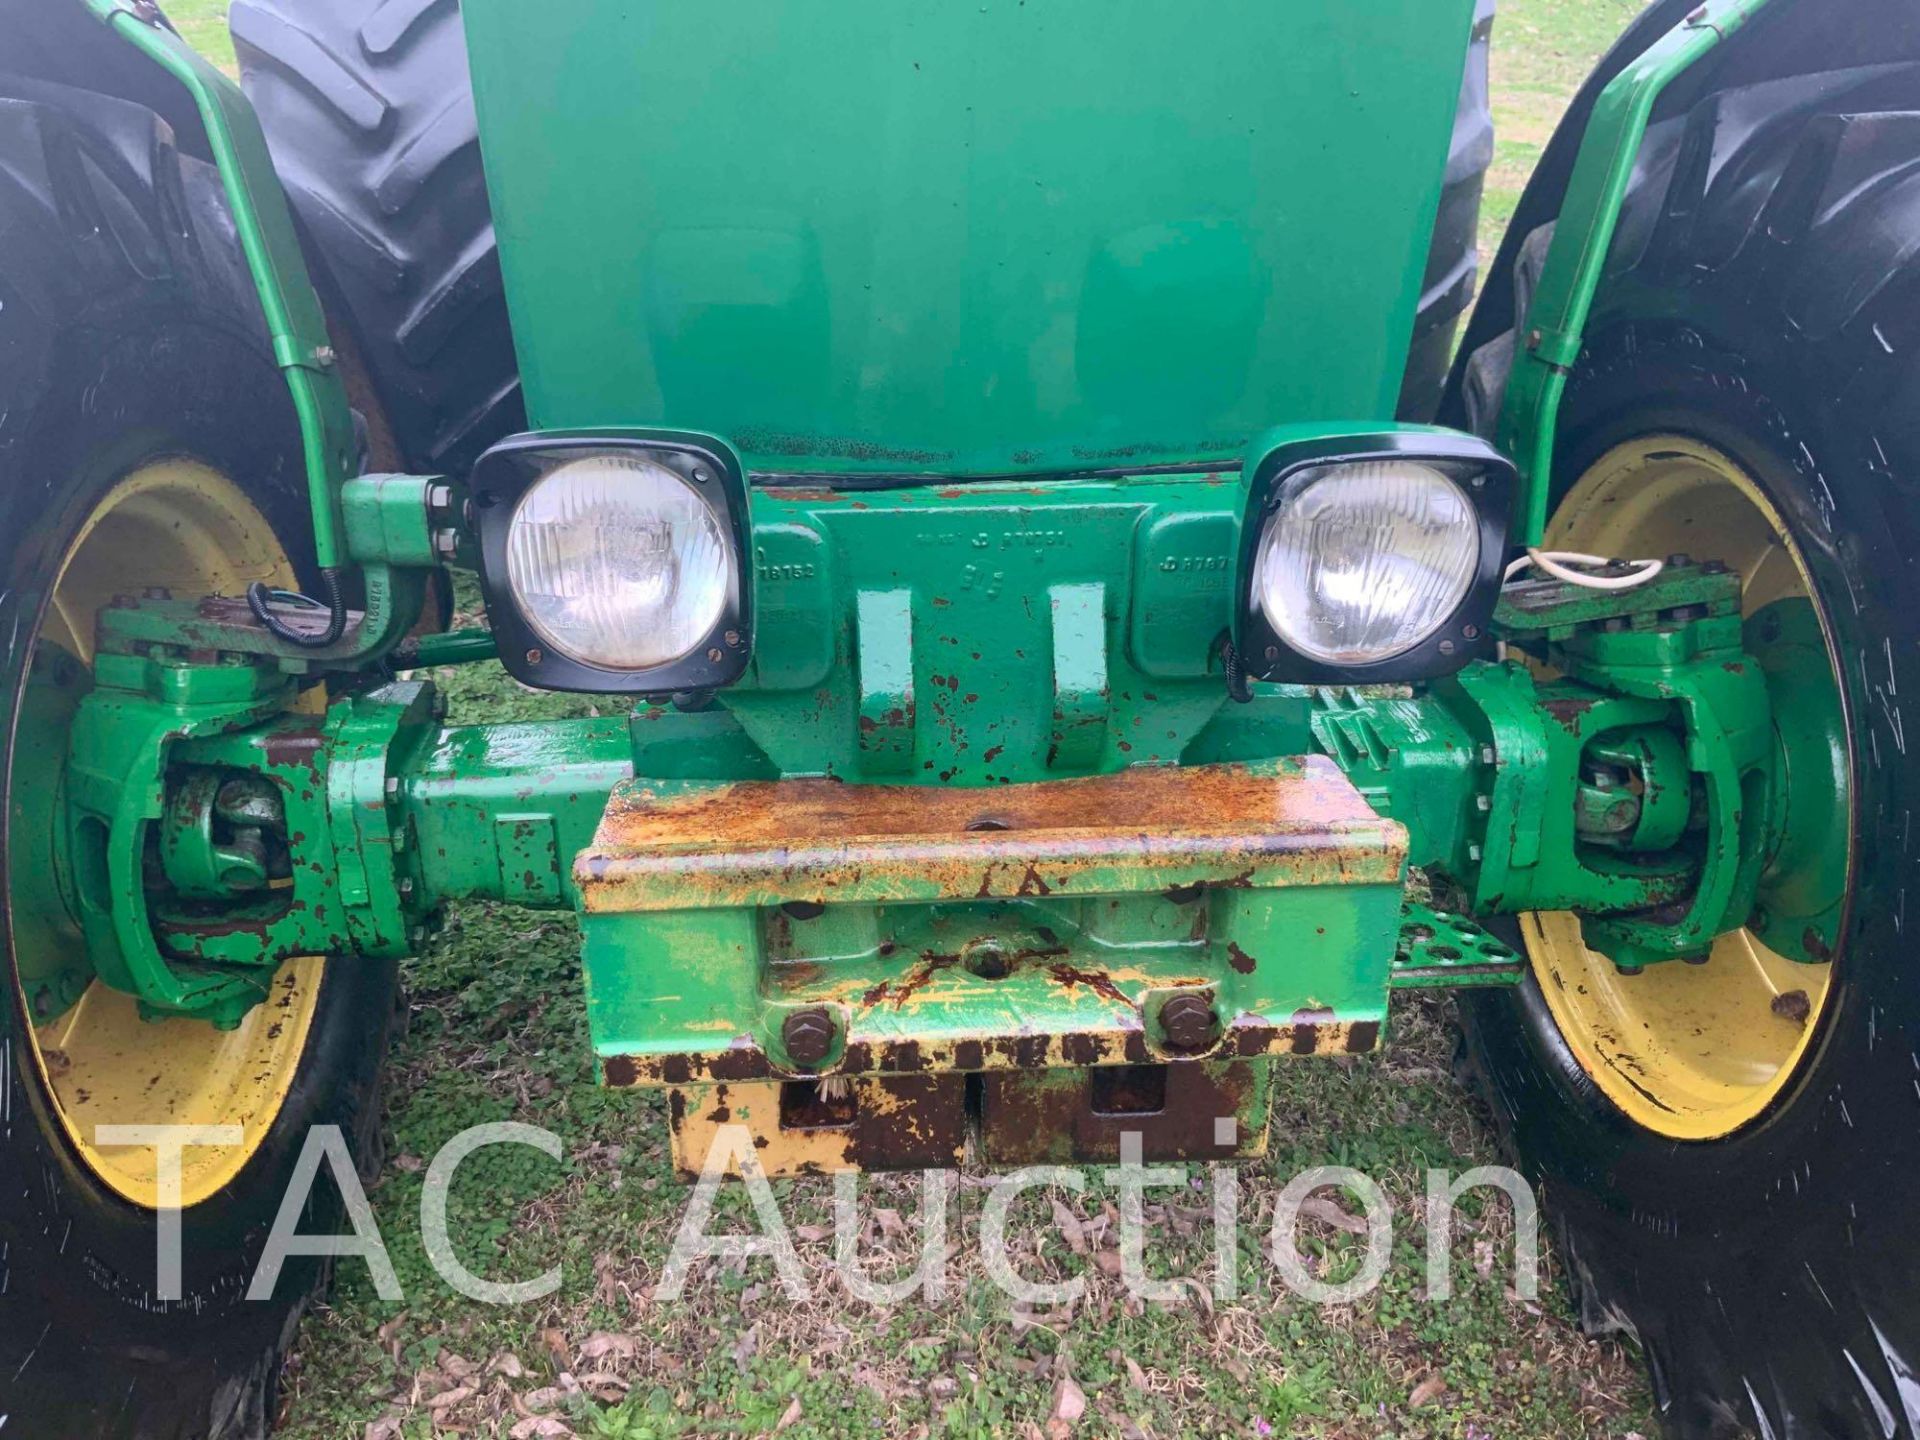 1989 John Deere 4250 4x4 Tractor - Image 25 of 48